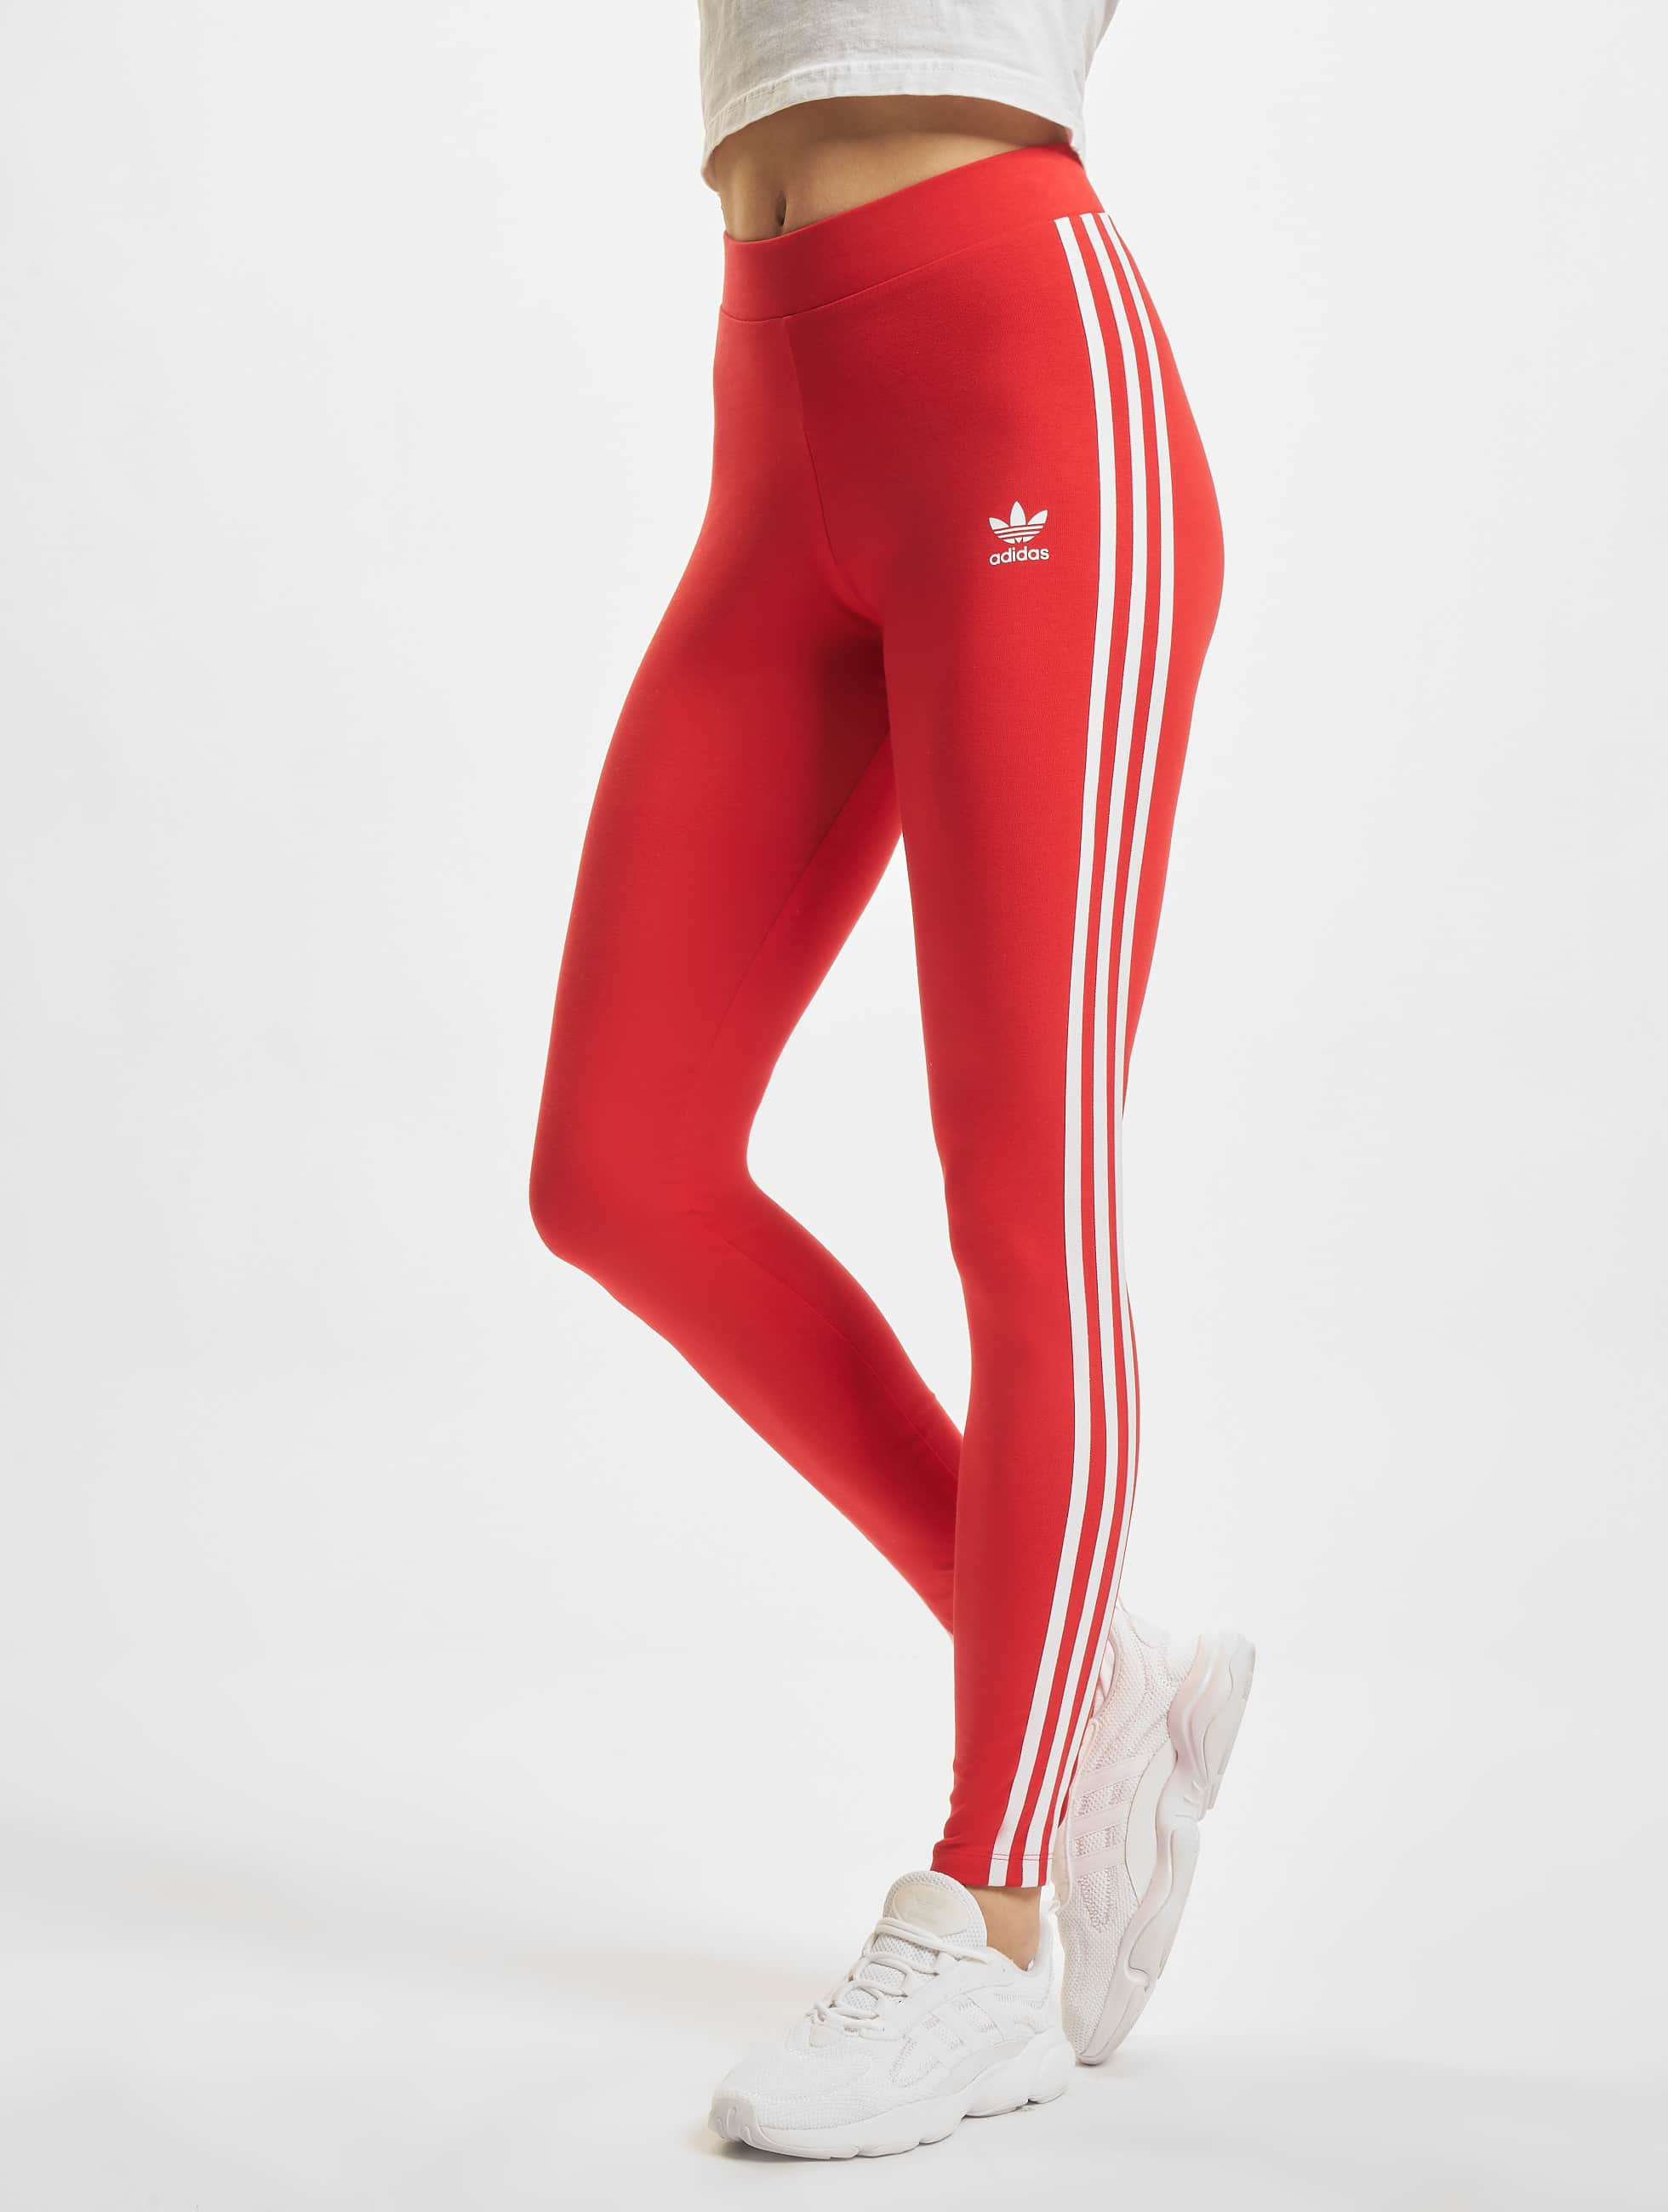 sueño Expresión Mareo adidas Originals Pantalón / Legging/Tregging 3 Stripes en rojo 867679